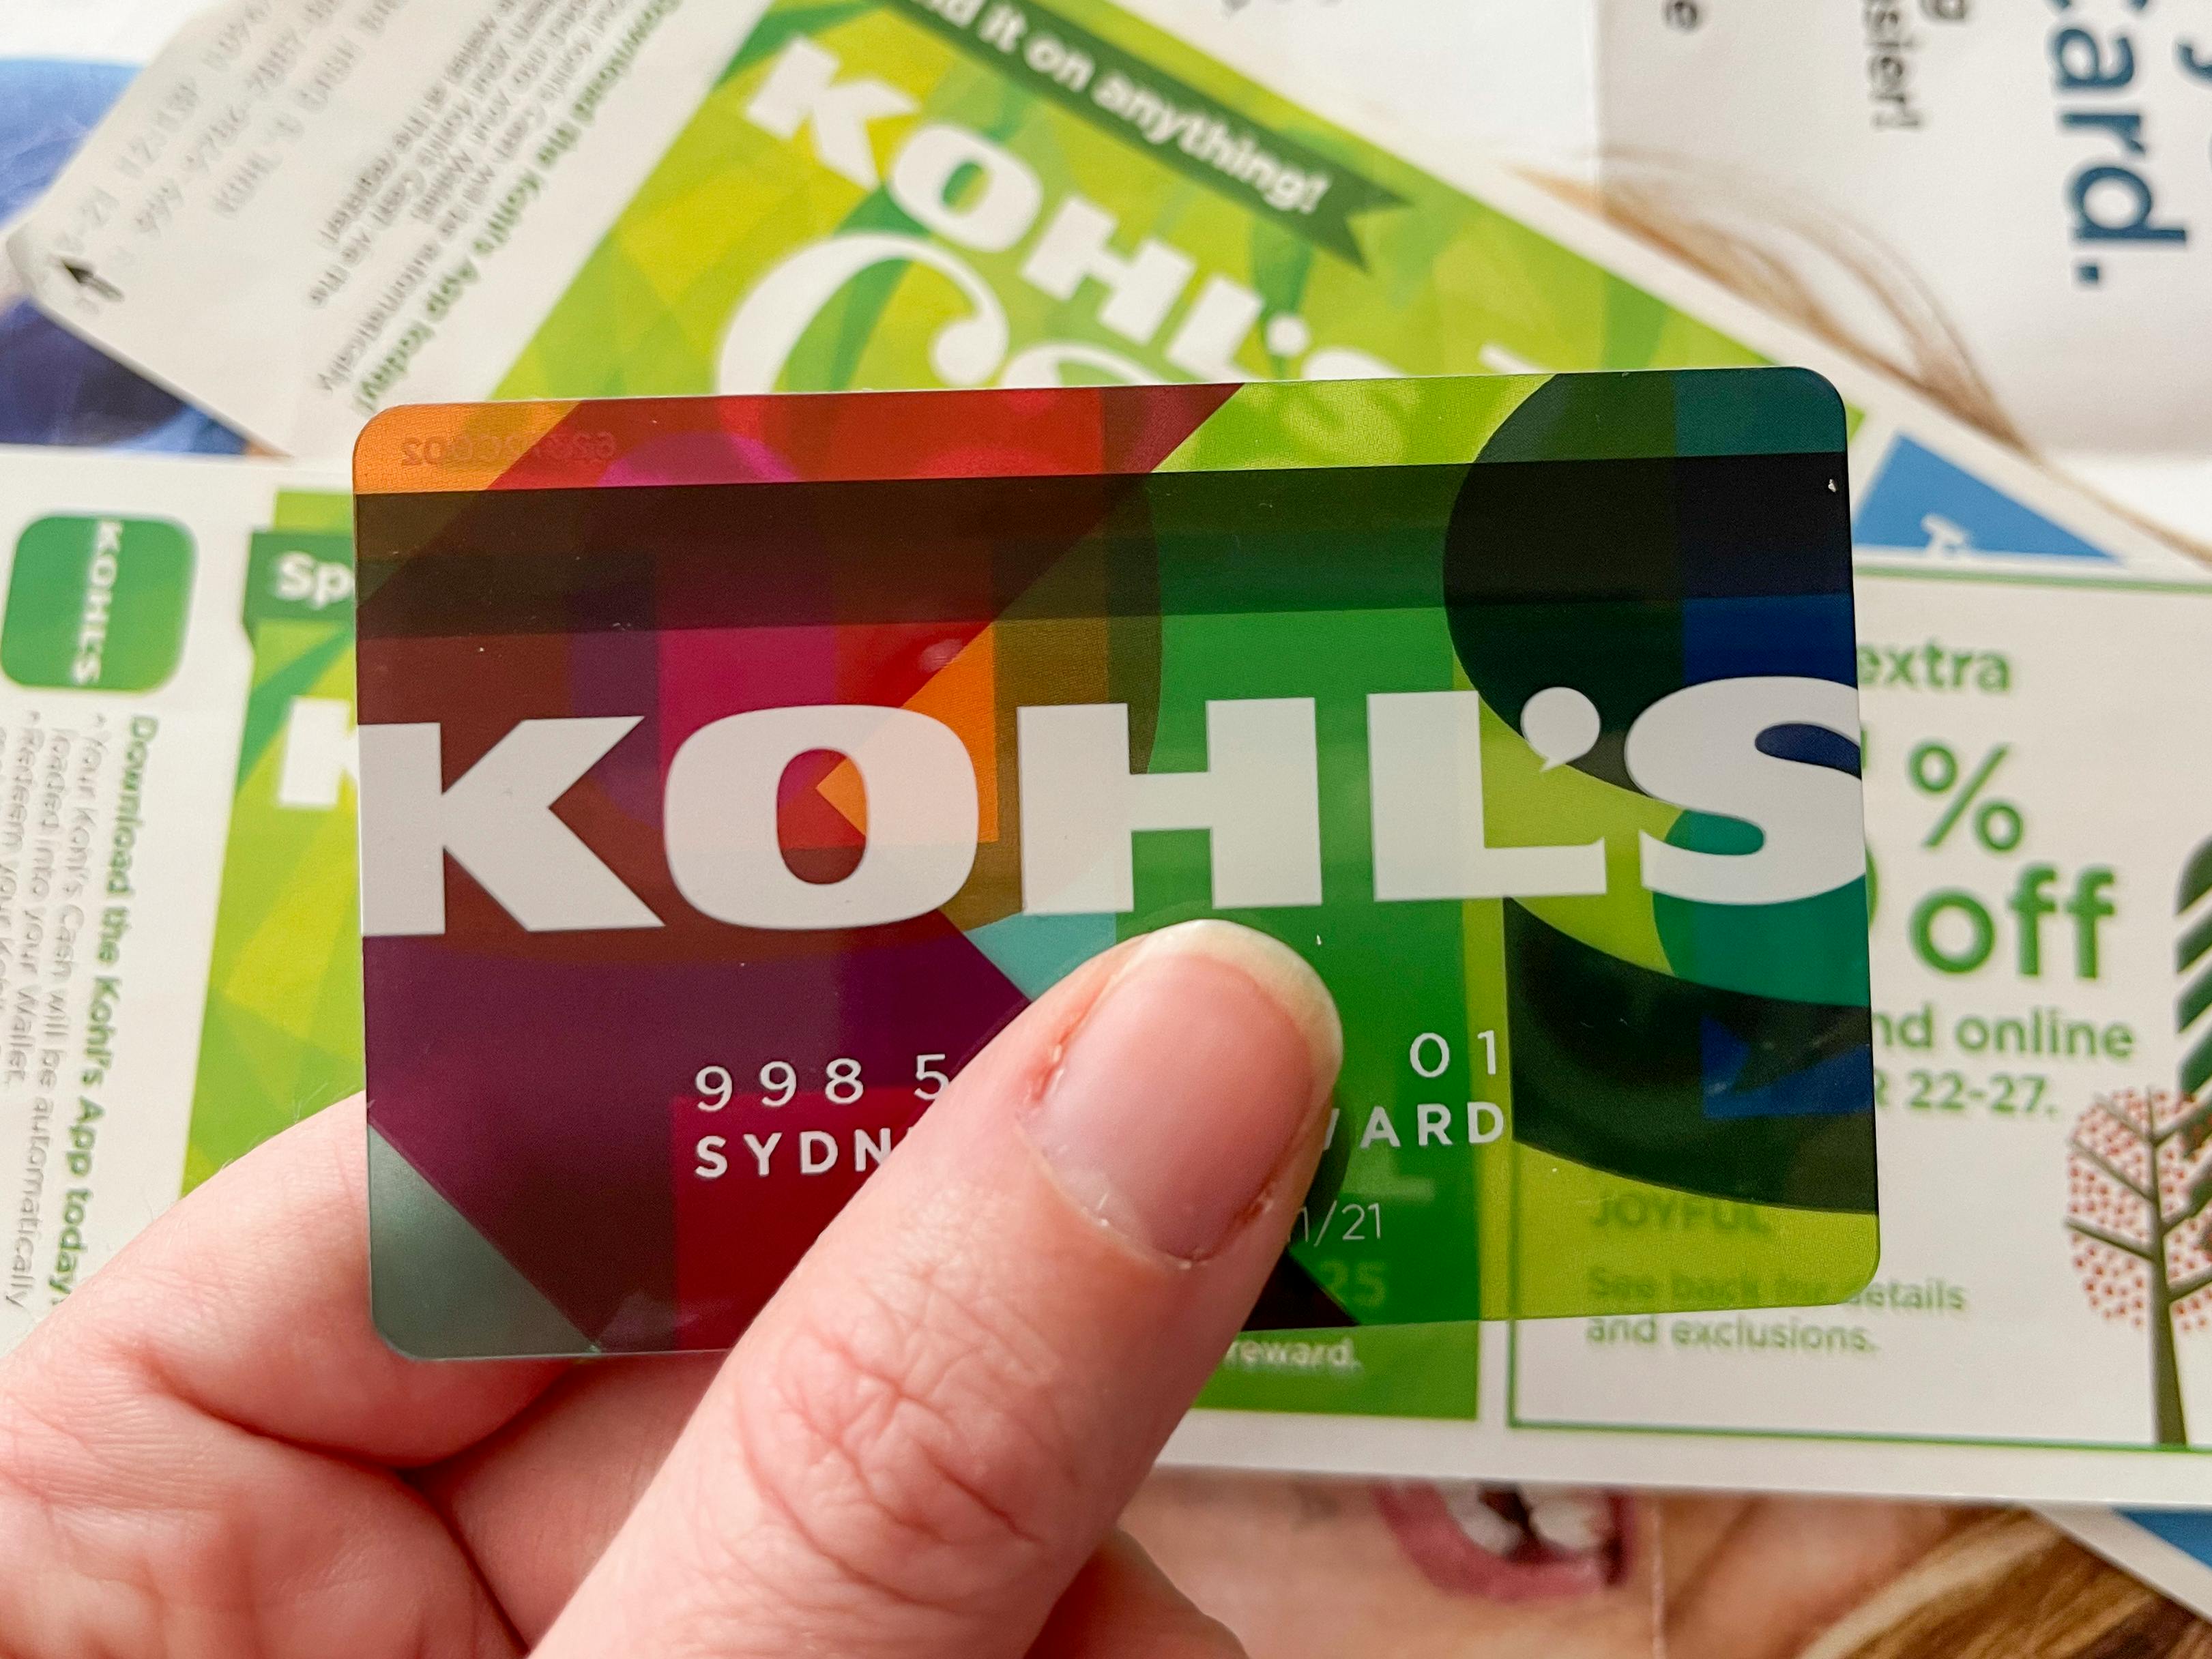 Kohls credit card held with Kohl's Cash.